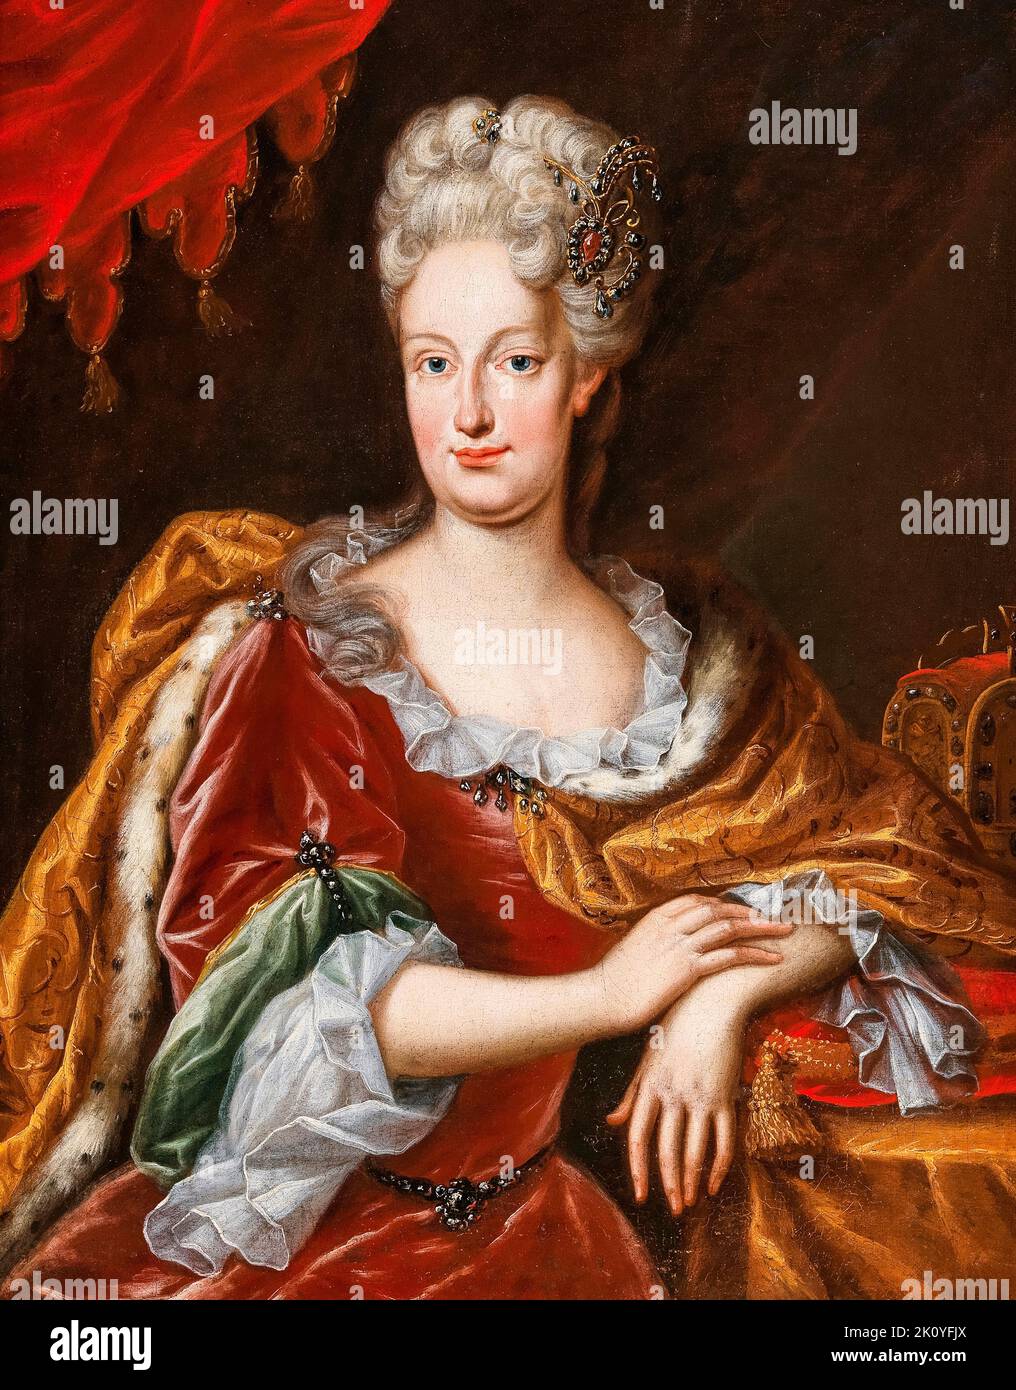 Ritratto dell'imperatrice Elisabeth Christine di Brunswick-Wolfenbüttel (1691-1750), dipinto ad olio su tela di Frans van Stampart, 1708-1715 Foto Stock